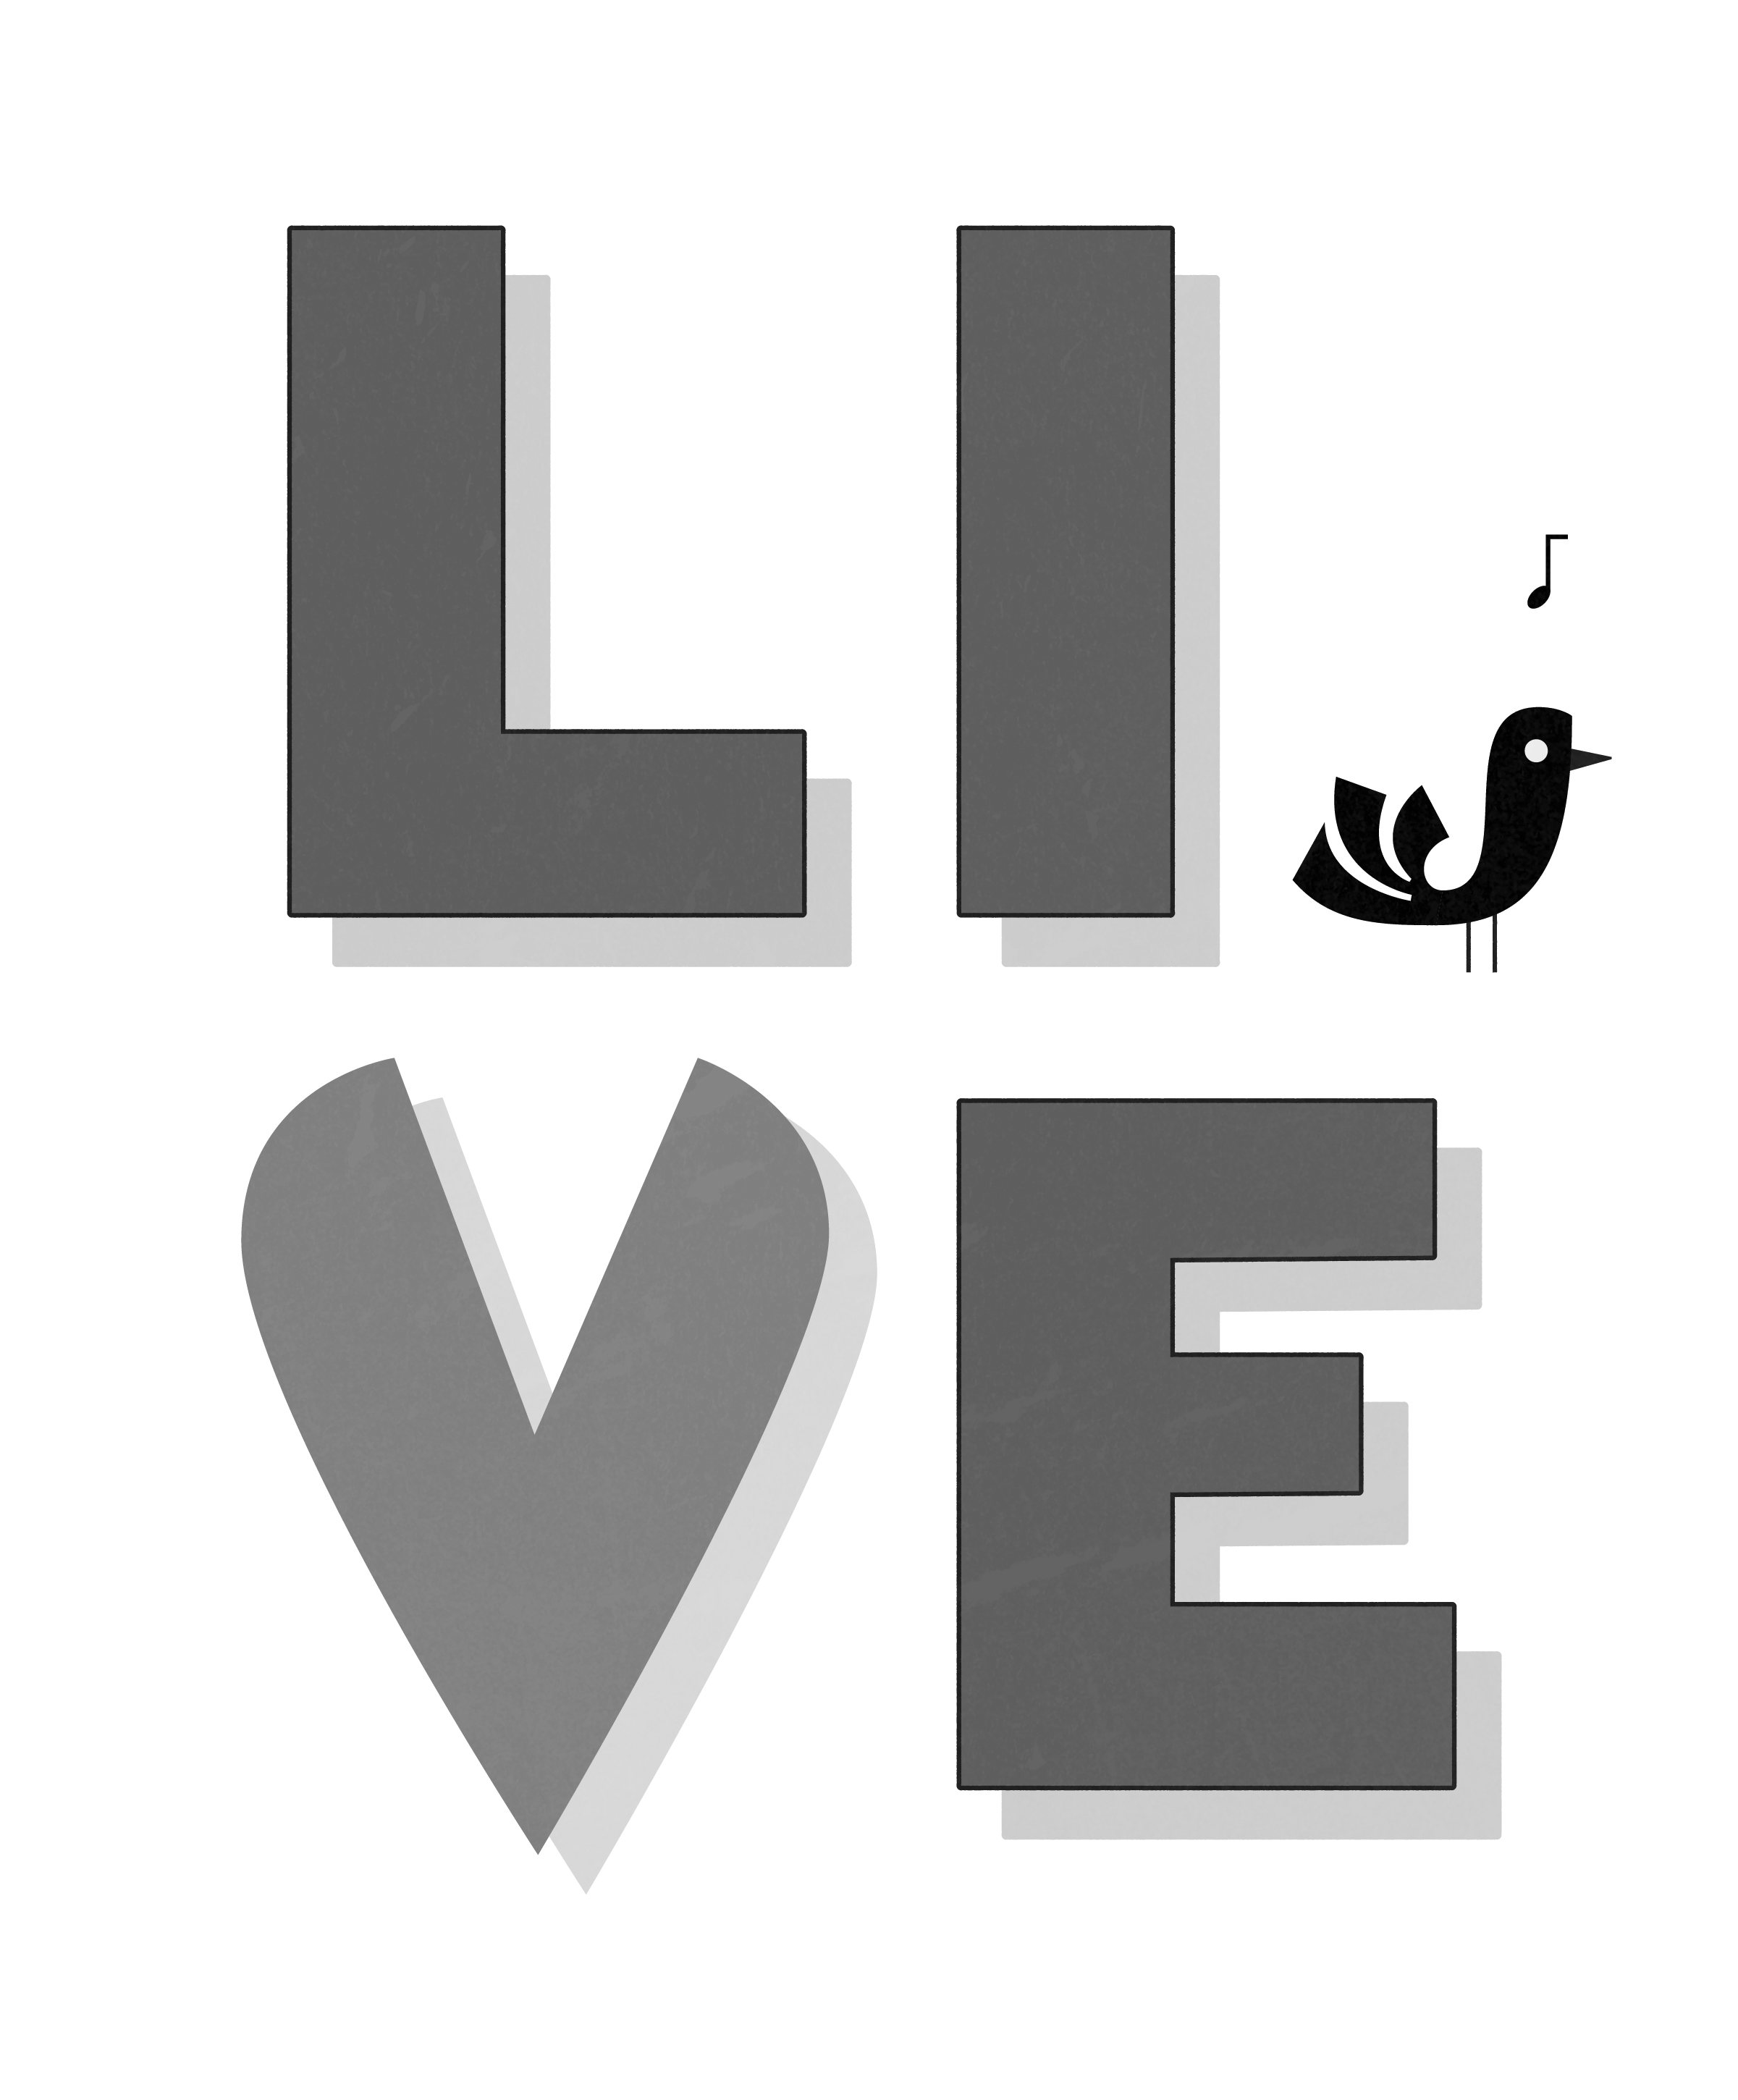 Ein Schriftzug (schwarz auf weiß) mit dem englischen Wortlaut LIVE in Großbuchstaben, gepaart mit einer kleinen Vogelillustration. Das V hat die Form eines Herzens.